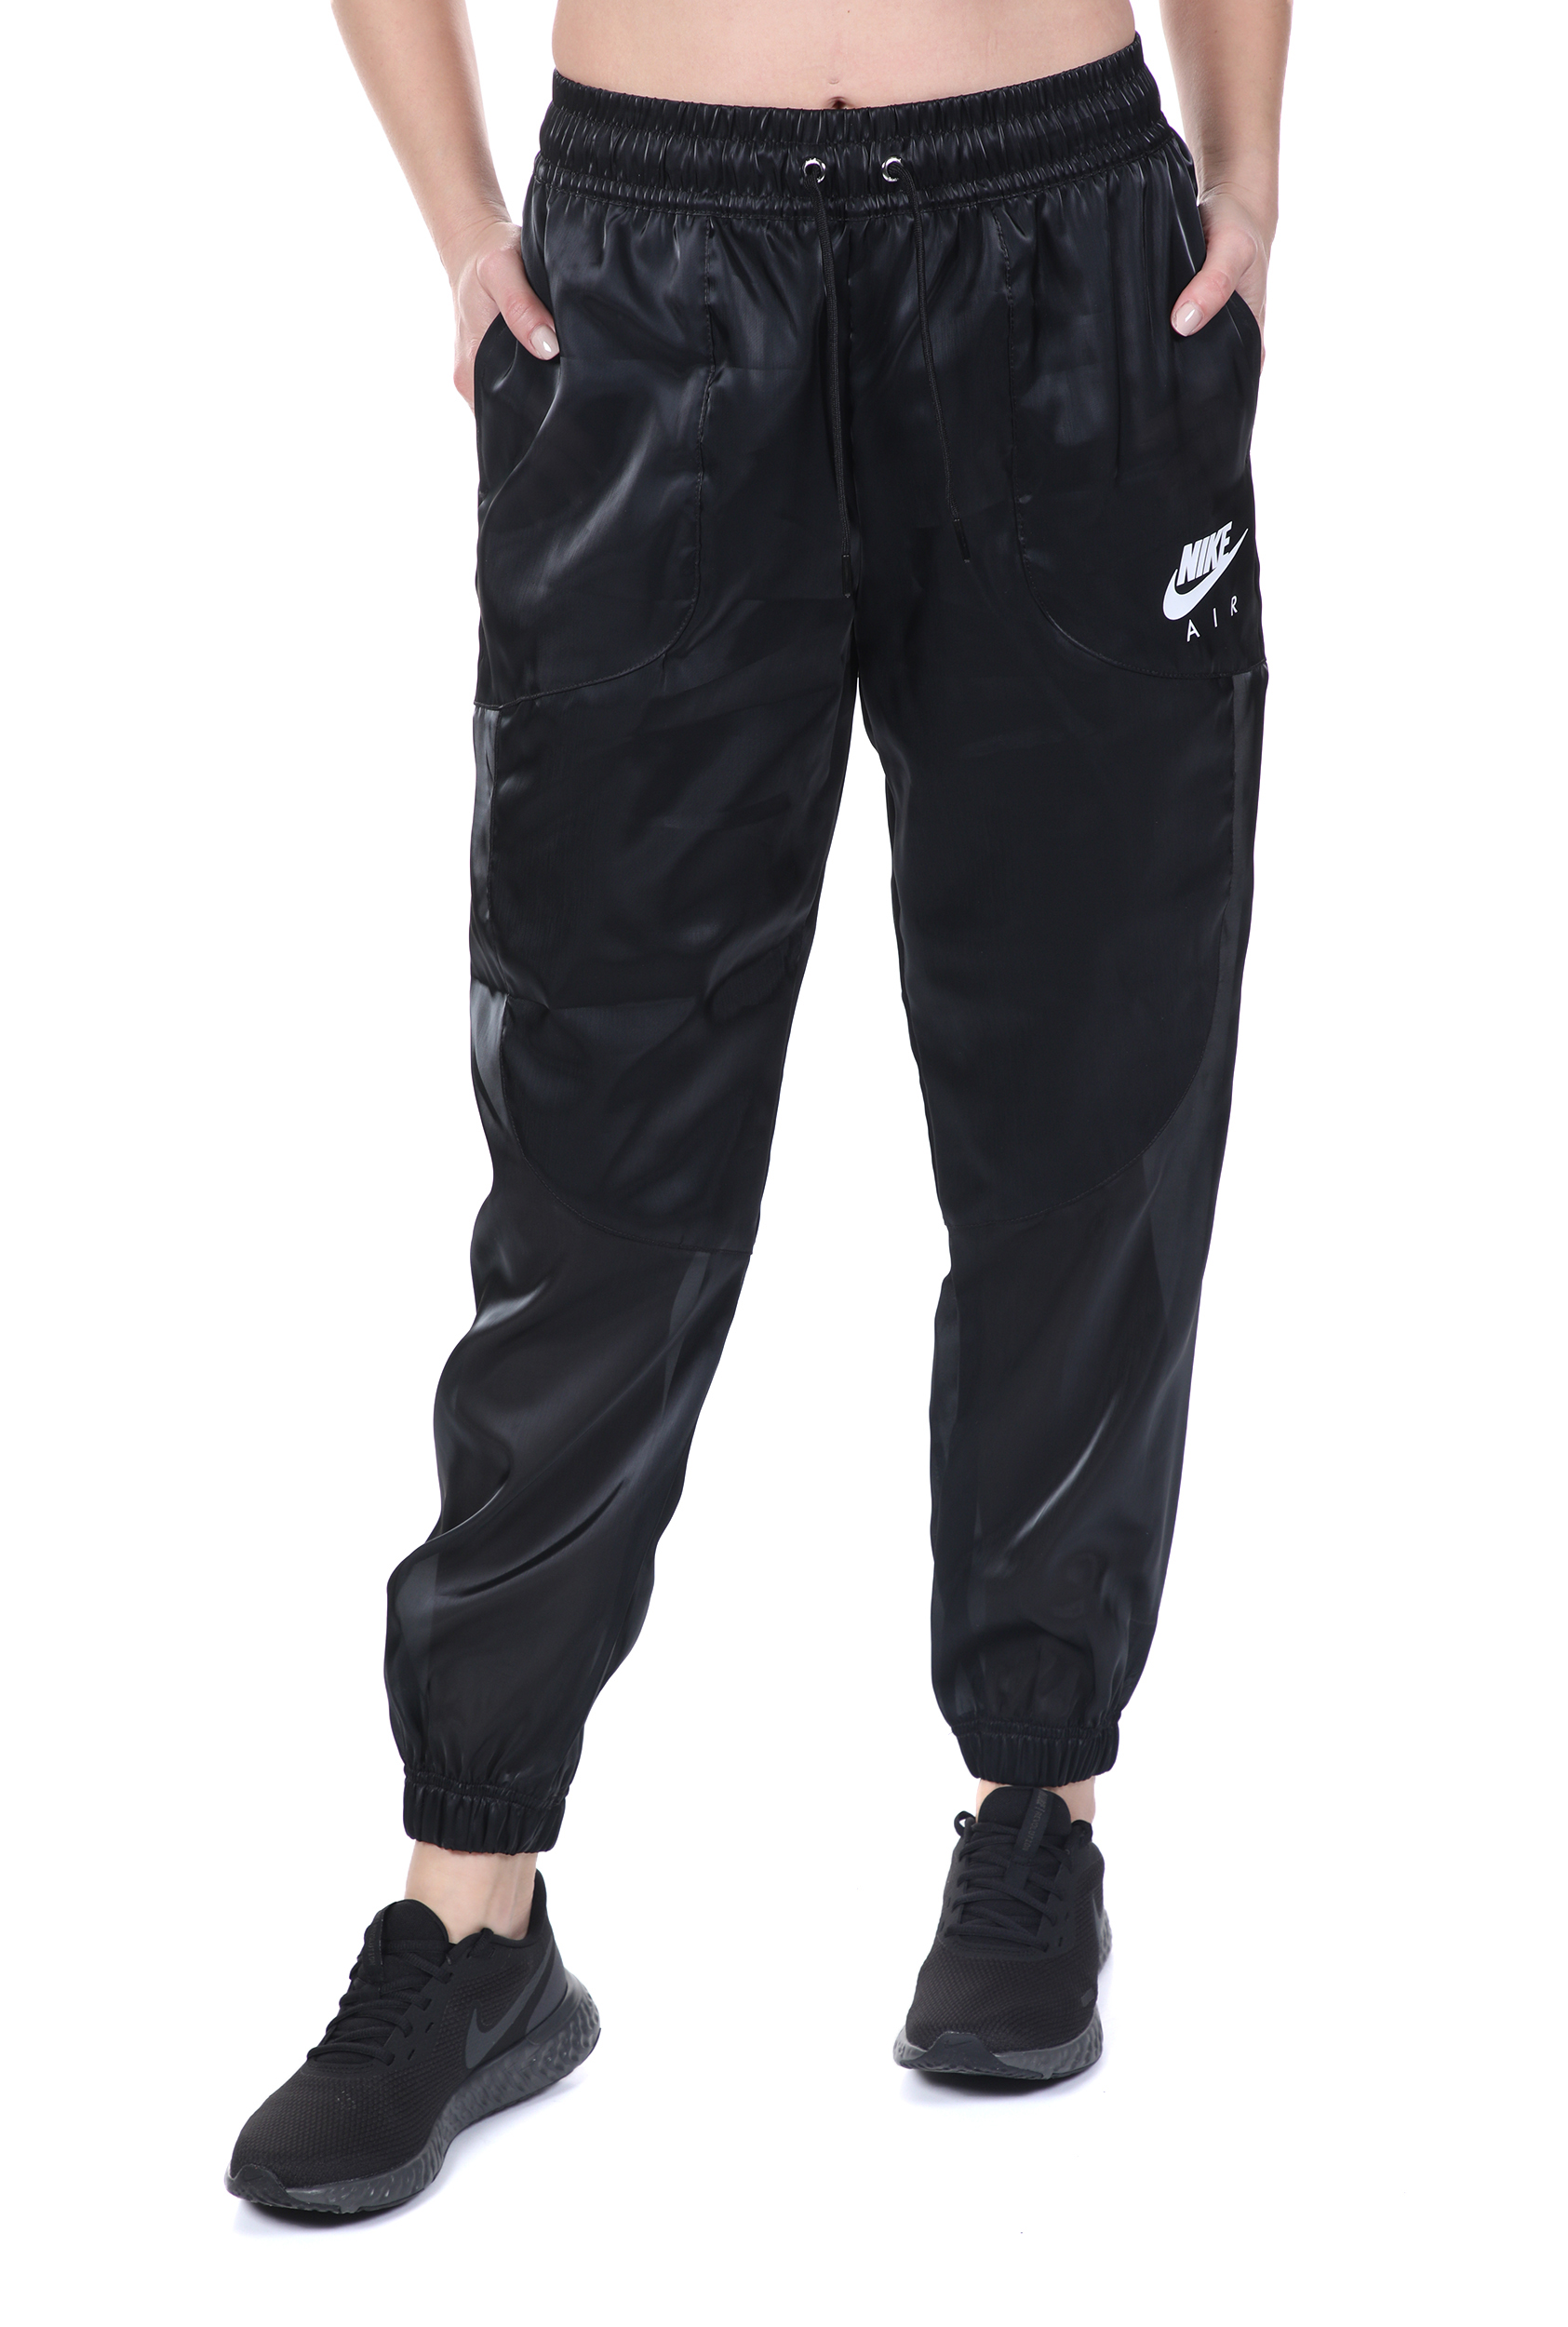 Γυναικεία/Ρούχα/Αθλητικά/Φόρμες NIKE - Γυναικείο παντελόνι φόρμας NIKE NSW AIR PANT SHEEN μαύρο